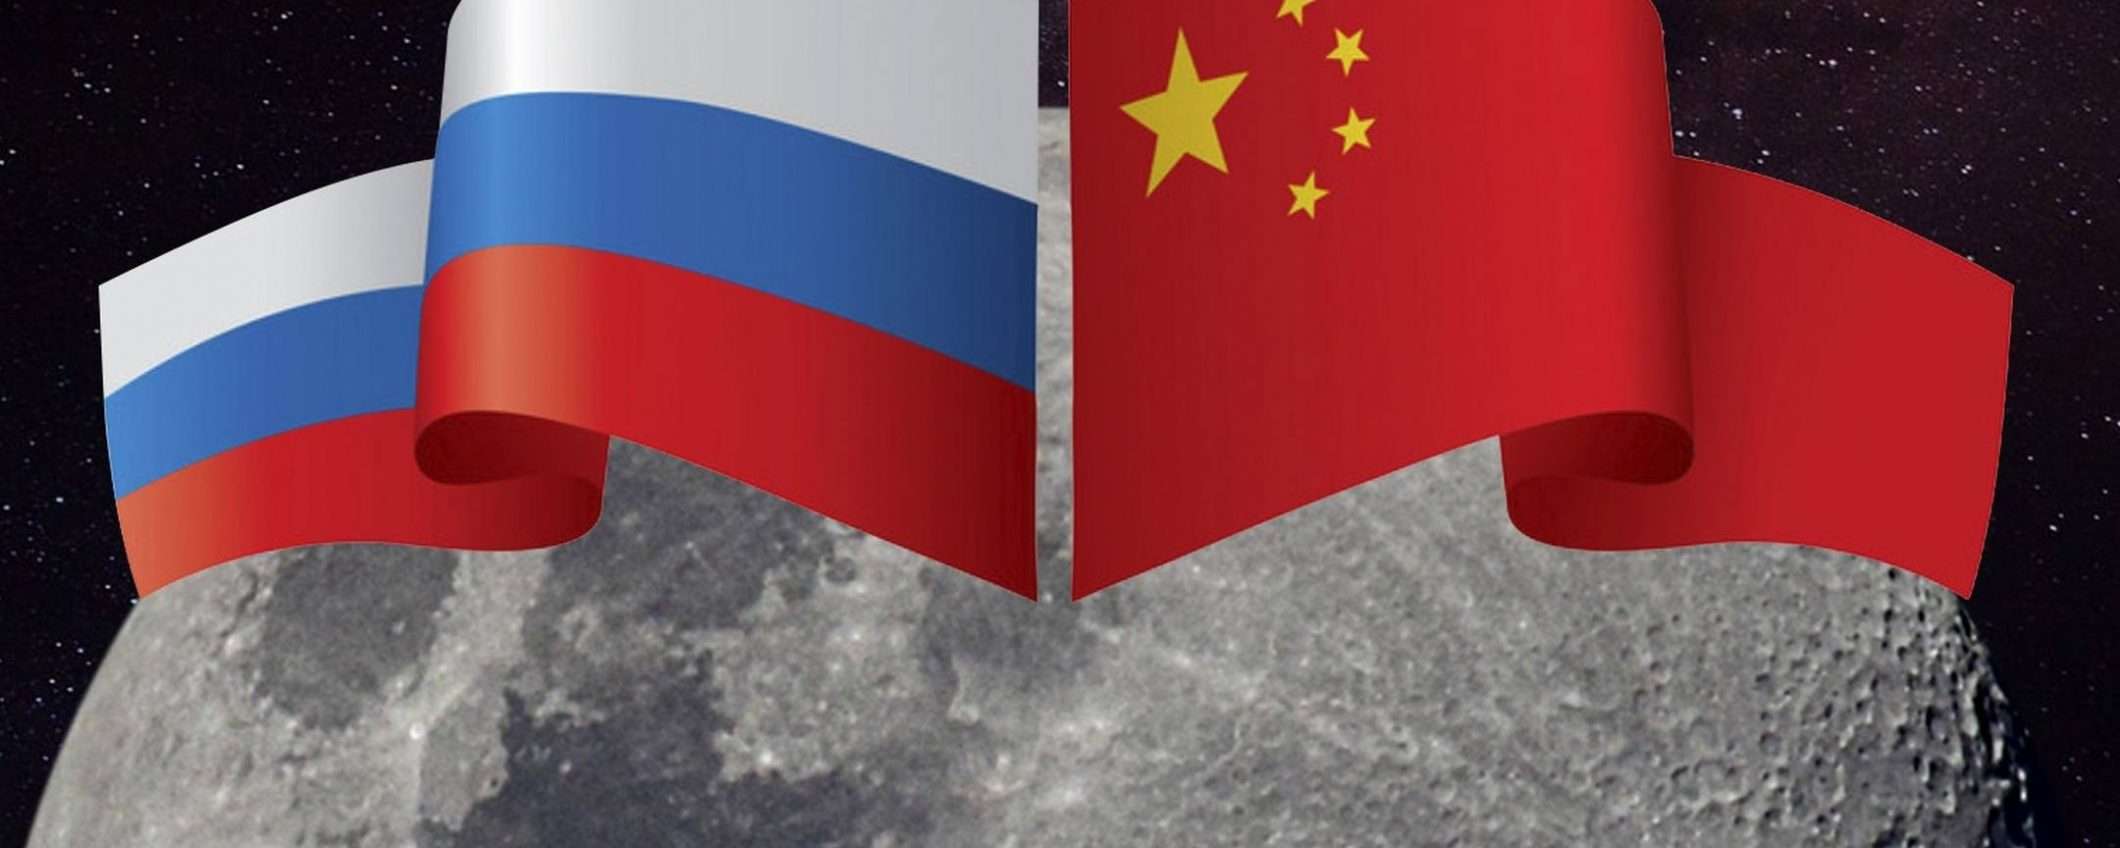 Astronauti cinesi e russi sulla Luna nel 2036